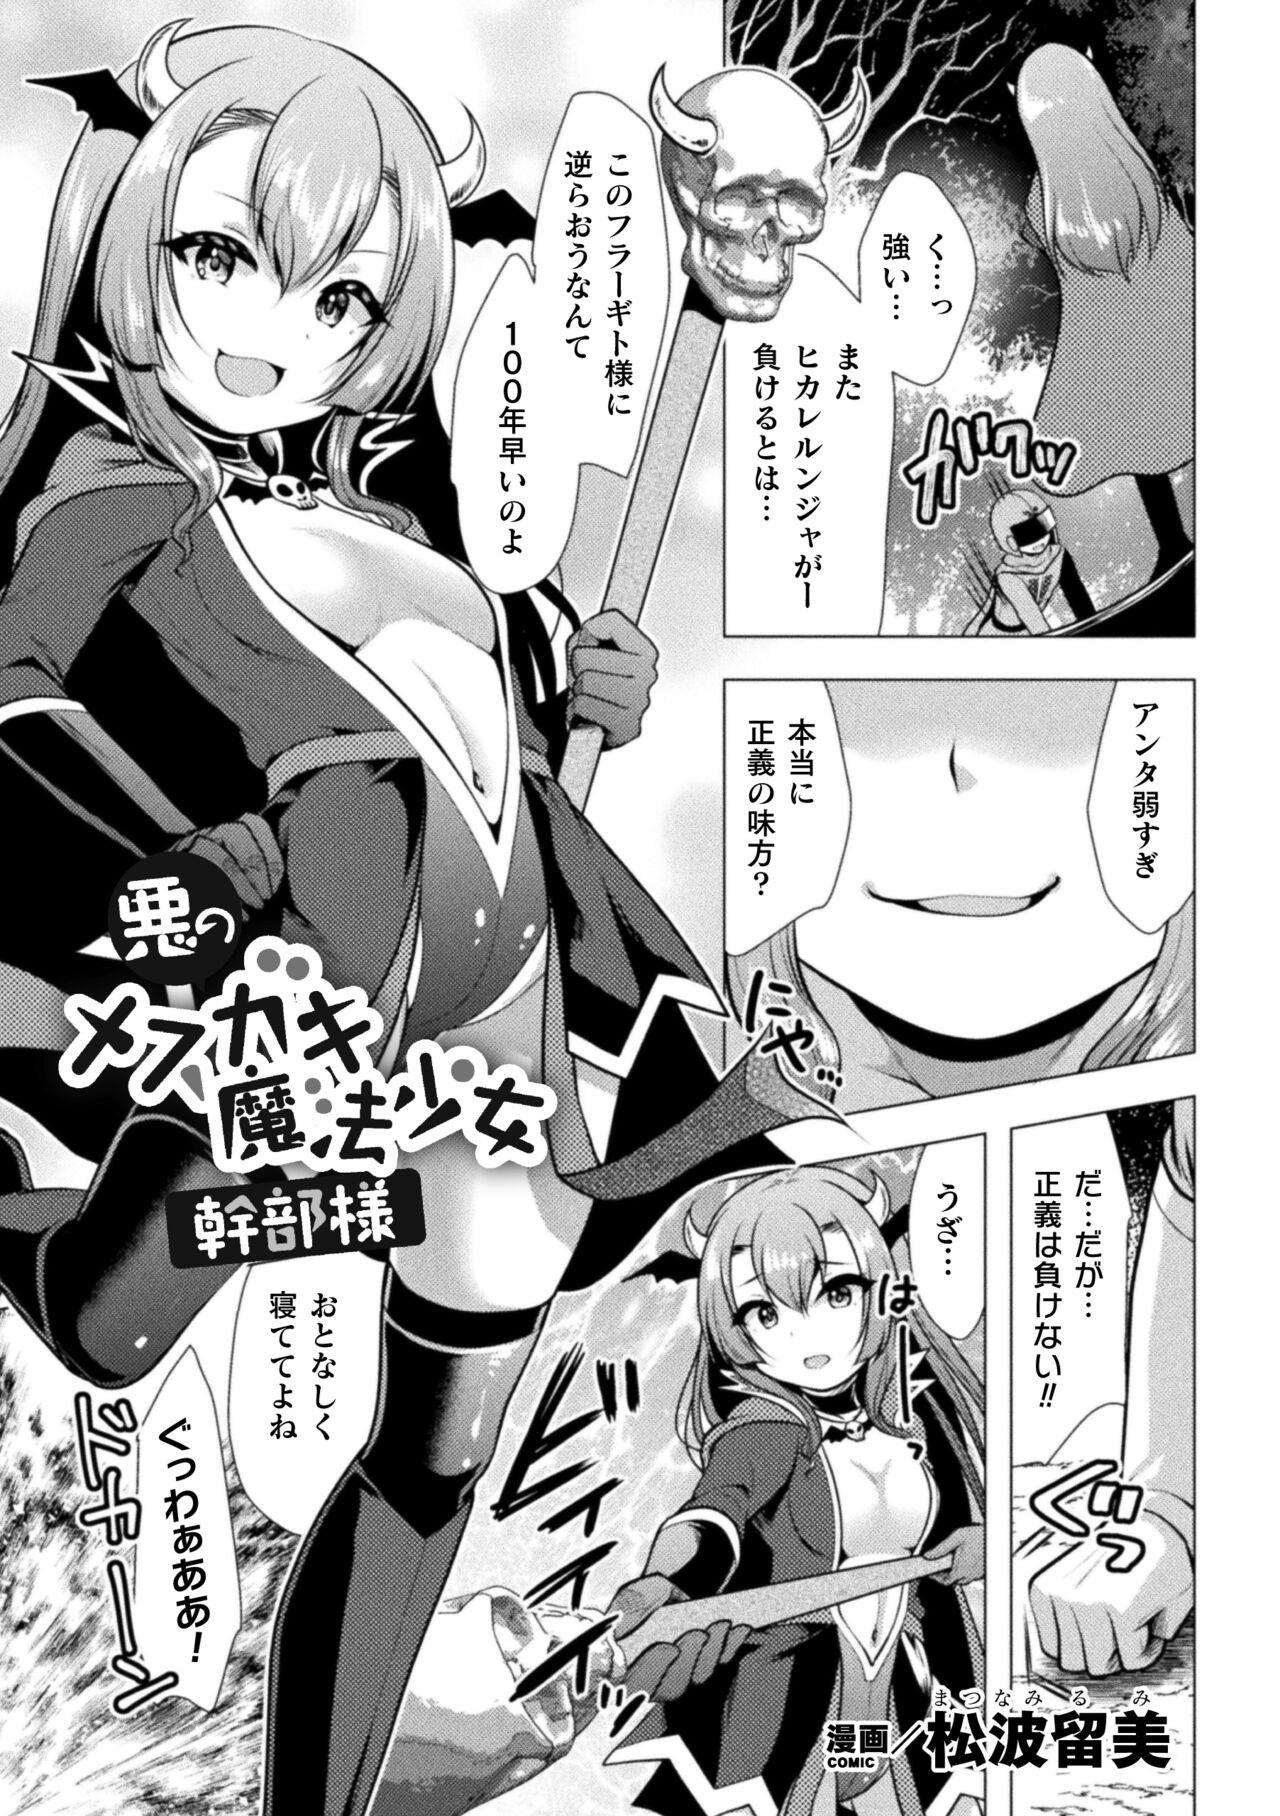 2D Comic Magazine Mesugaki Henshin Heroine Kikaikan Seisai Hijou no Wakarase Machine de Renzoku Loli Acme Vol. 3 2